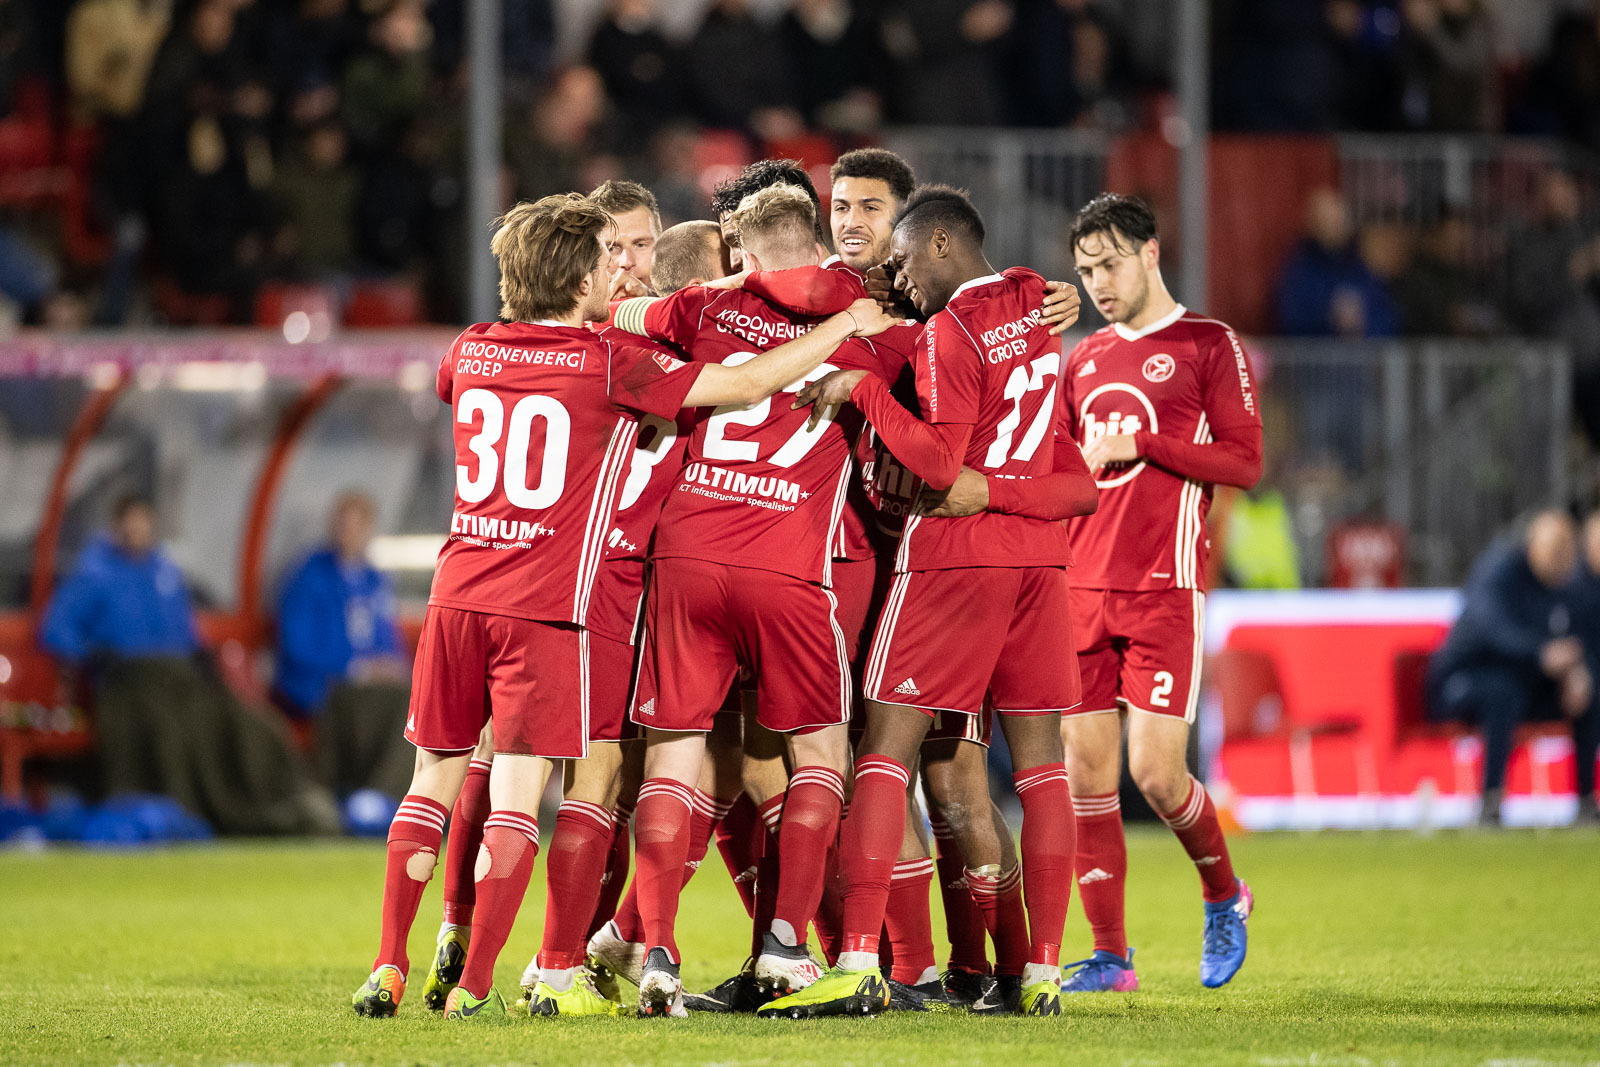 Seizoenkaarten Almere City FC in recordtempo